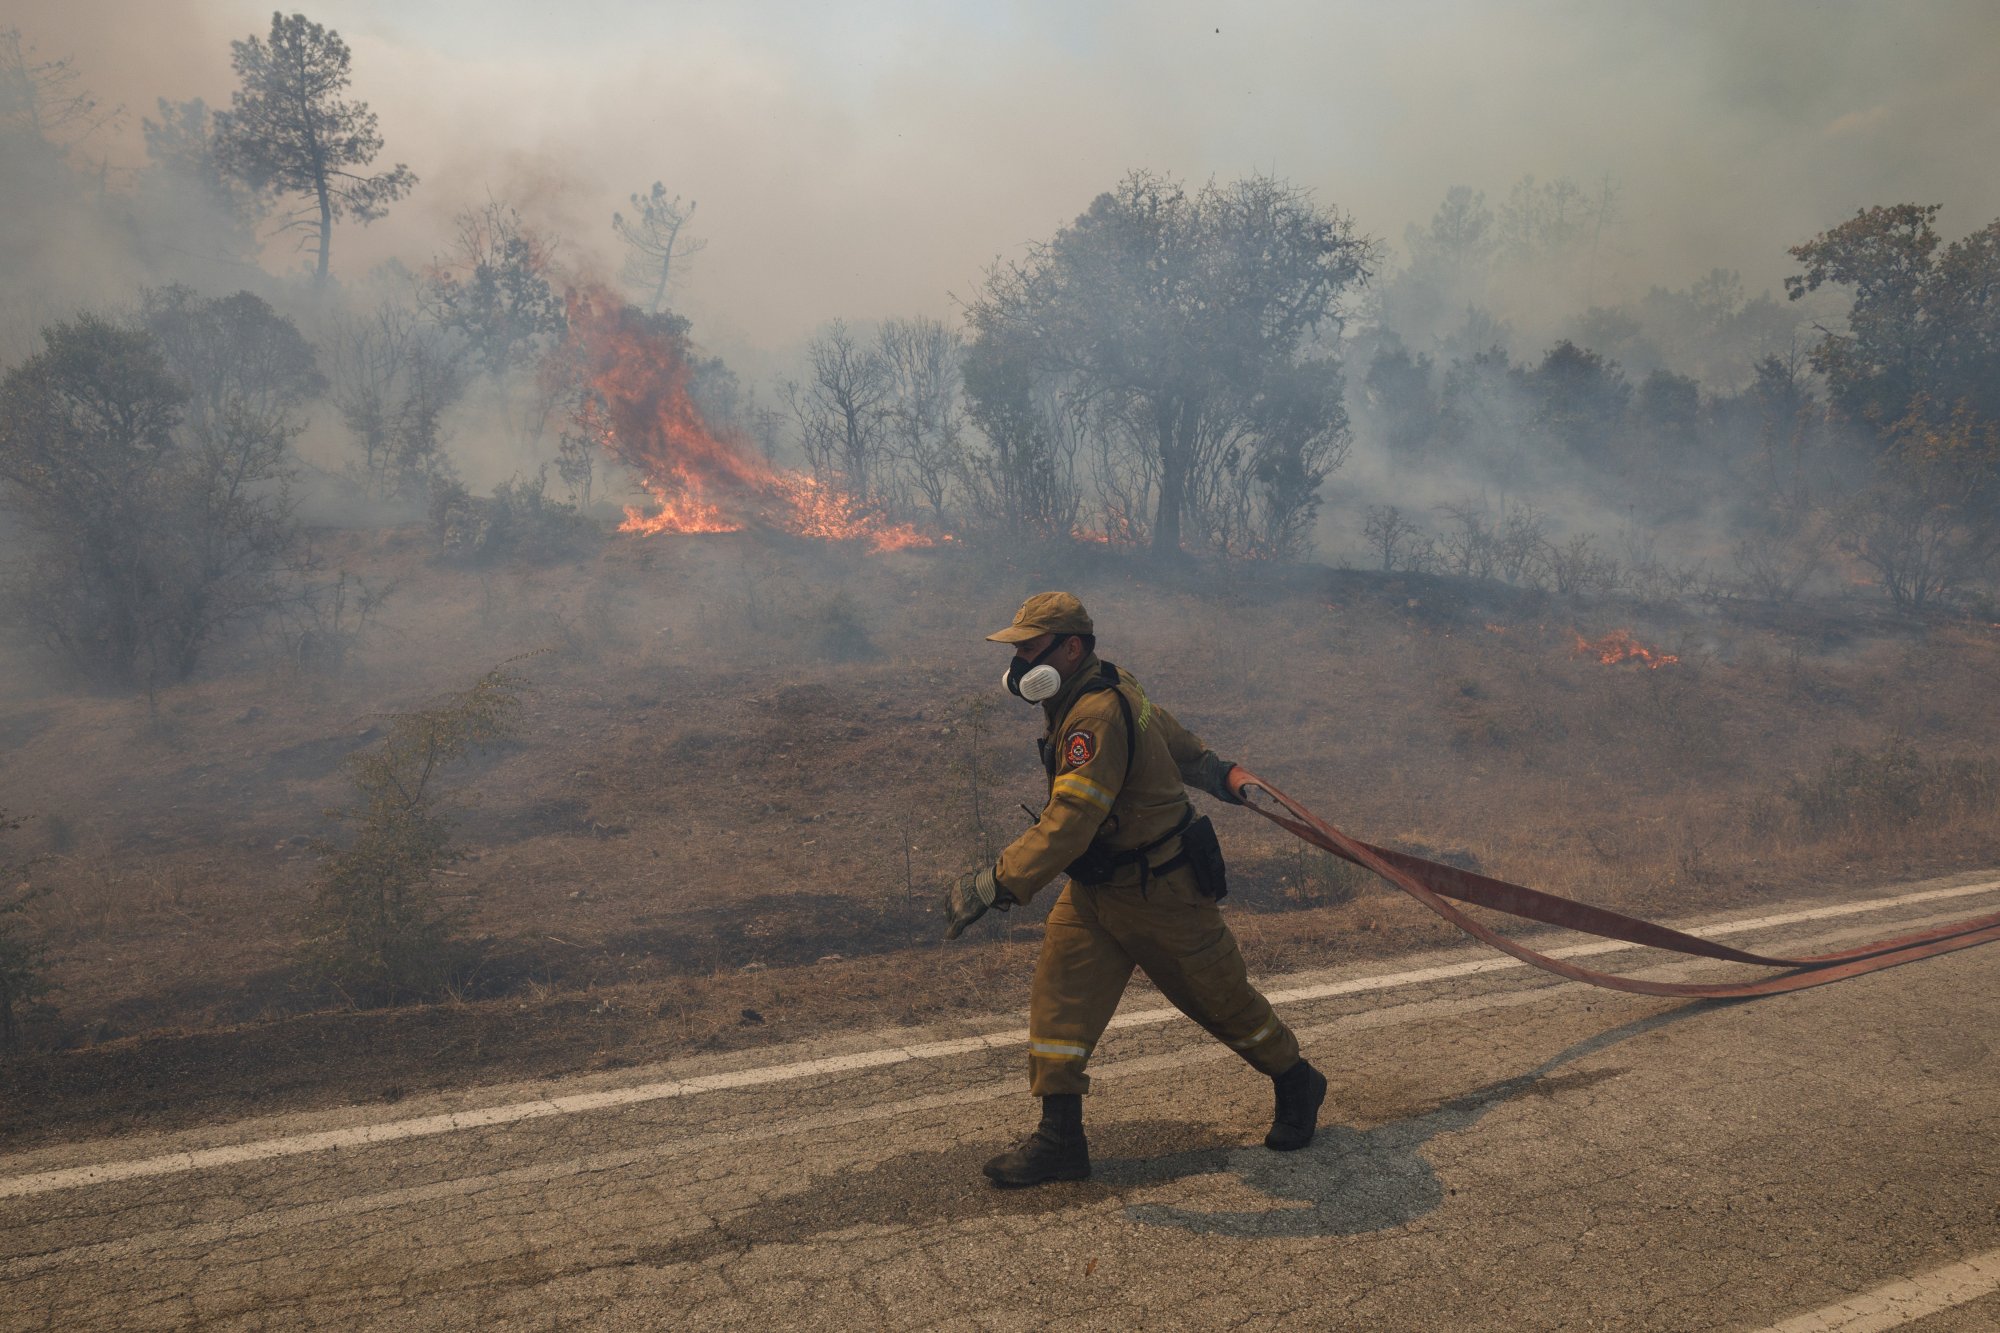 Φωτιά στον Έβρο: «Δεν είμαστε αναλώσιμοι» - Καταγγελία πυροσβεστών για συνθήκες εξόντωσης